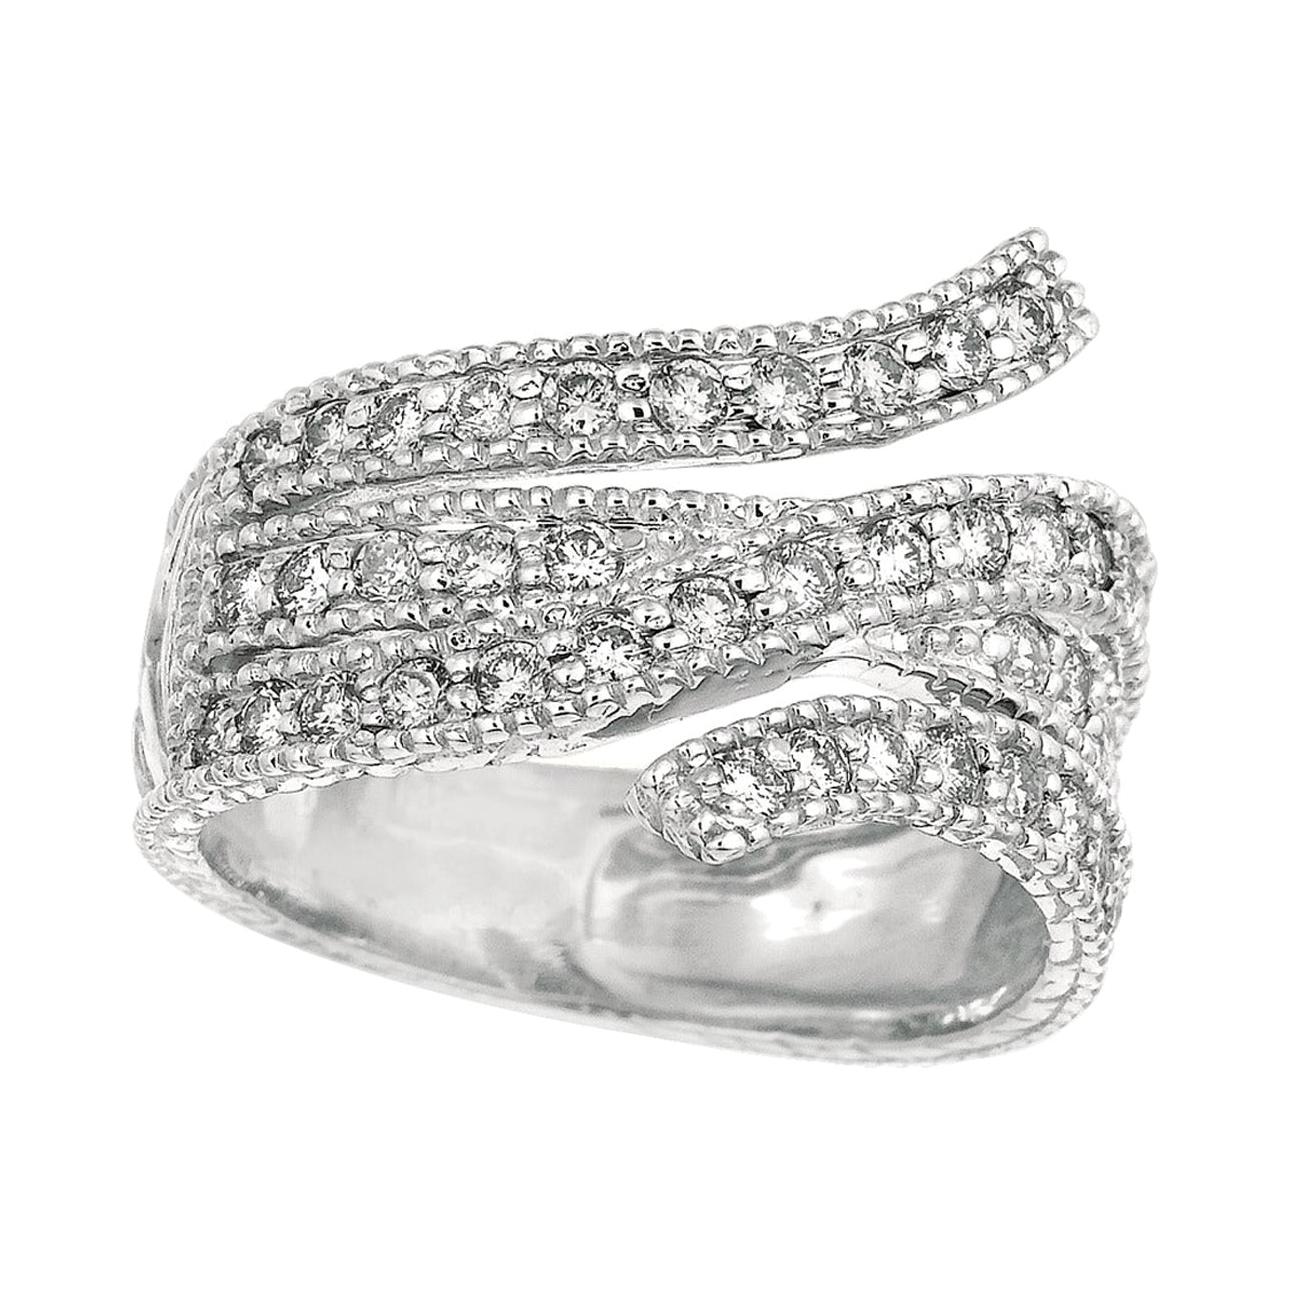 1.05 Carat Natural Diamond Fashion Ring Band G SI 14 Karat White Gold